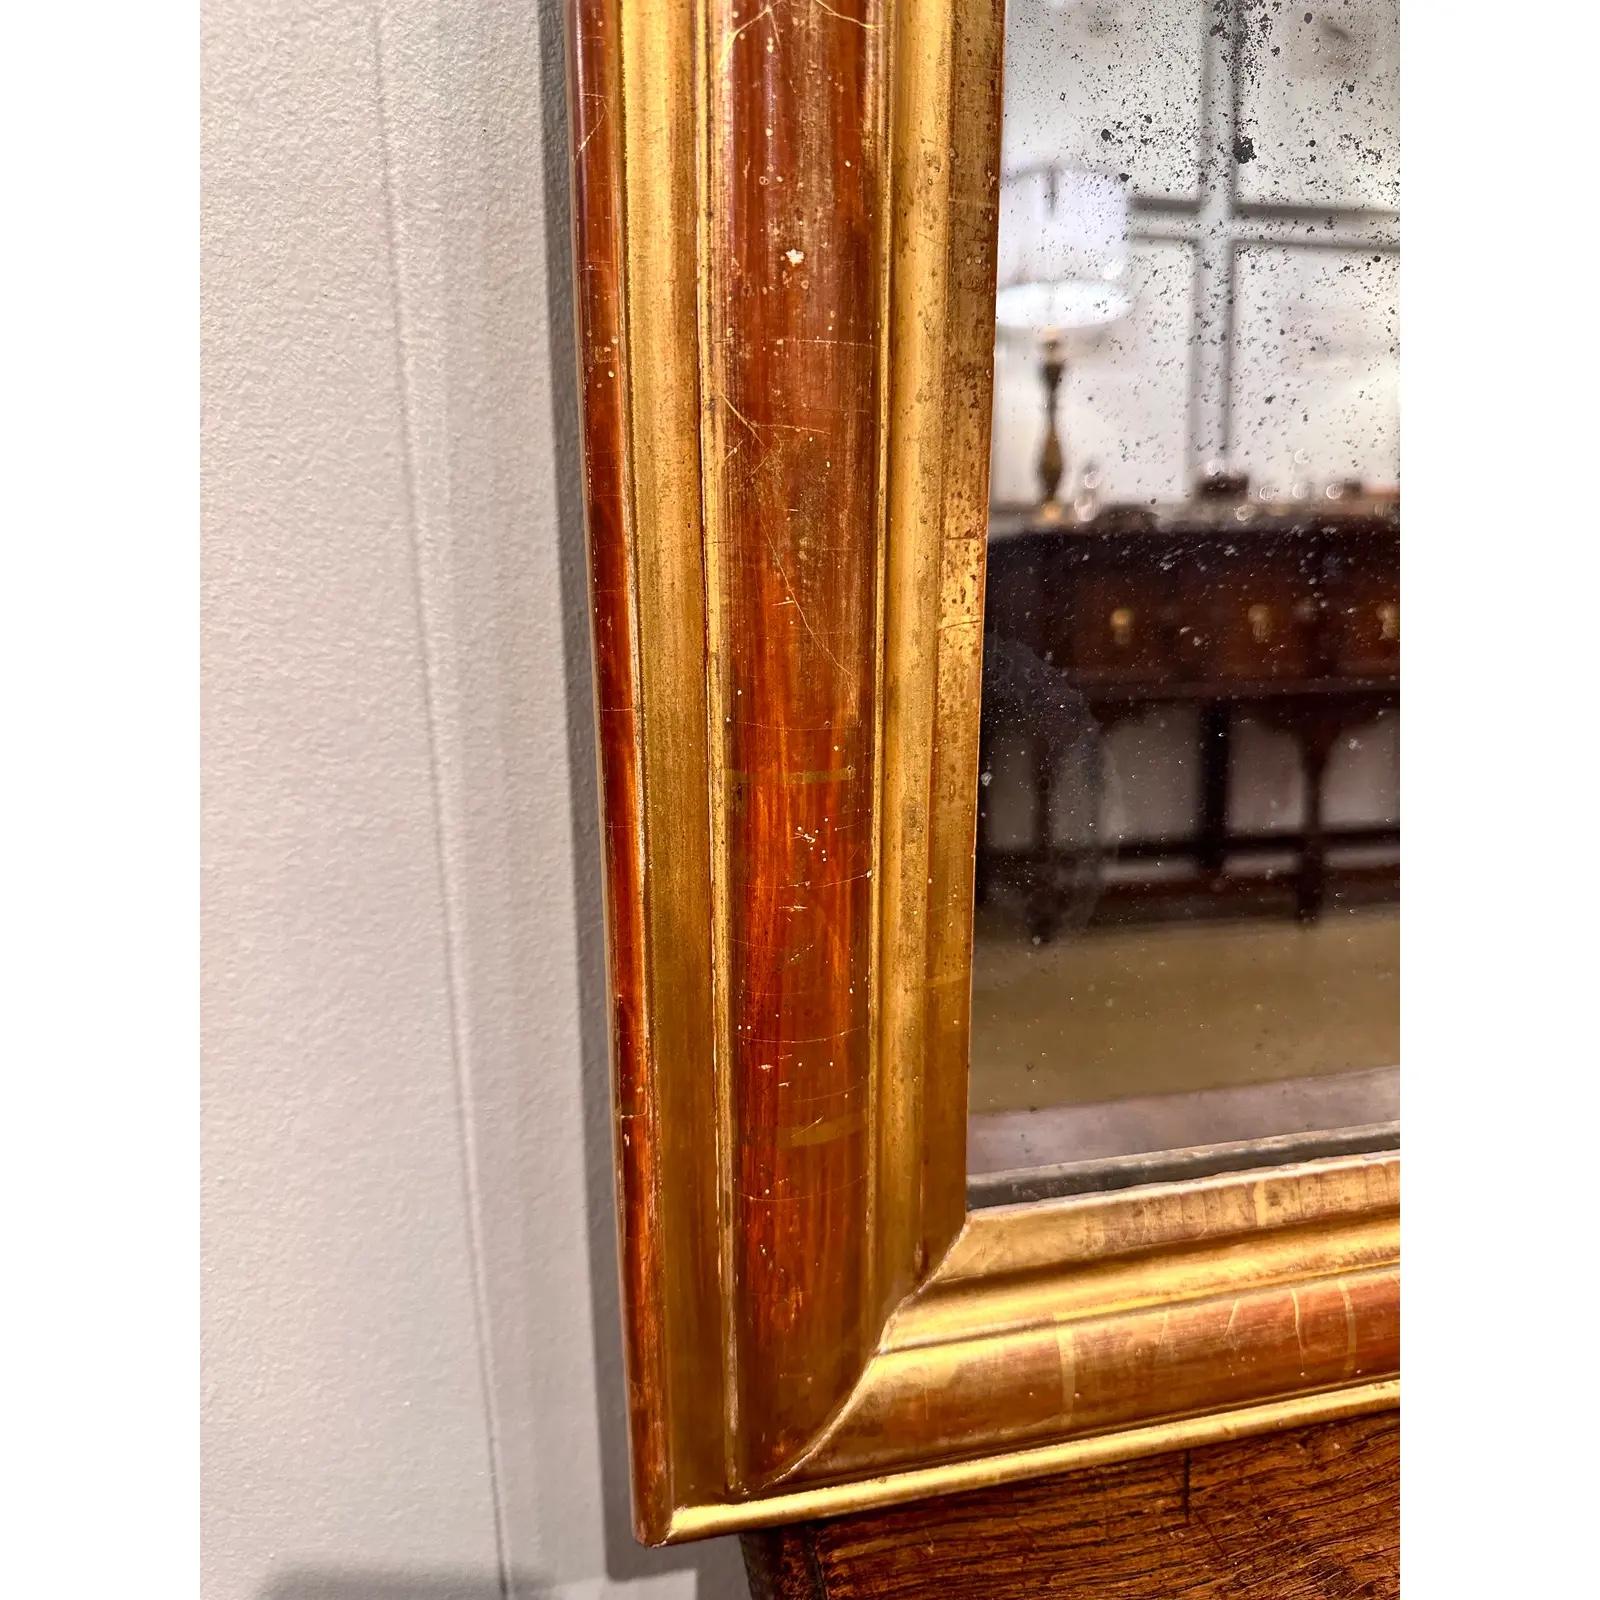 Dies ist ein schöner Louis Philippe Spiegel aus den 1880er Jahren! Dieser Spiegel ist schlicht im Stil und hat dennoch viel Charakter. Es hat auch schön mit dem Gold gealtert hat abgenutzt genug, um schöne Patina und Alter zeigen. Dieser Spiegel